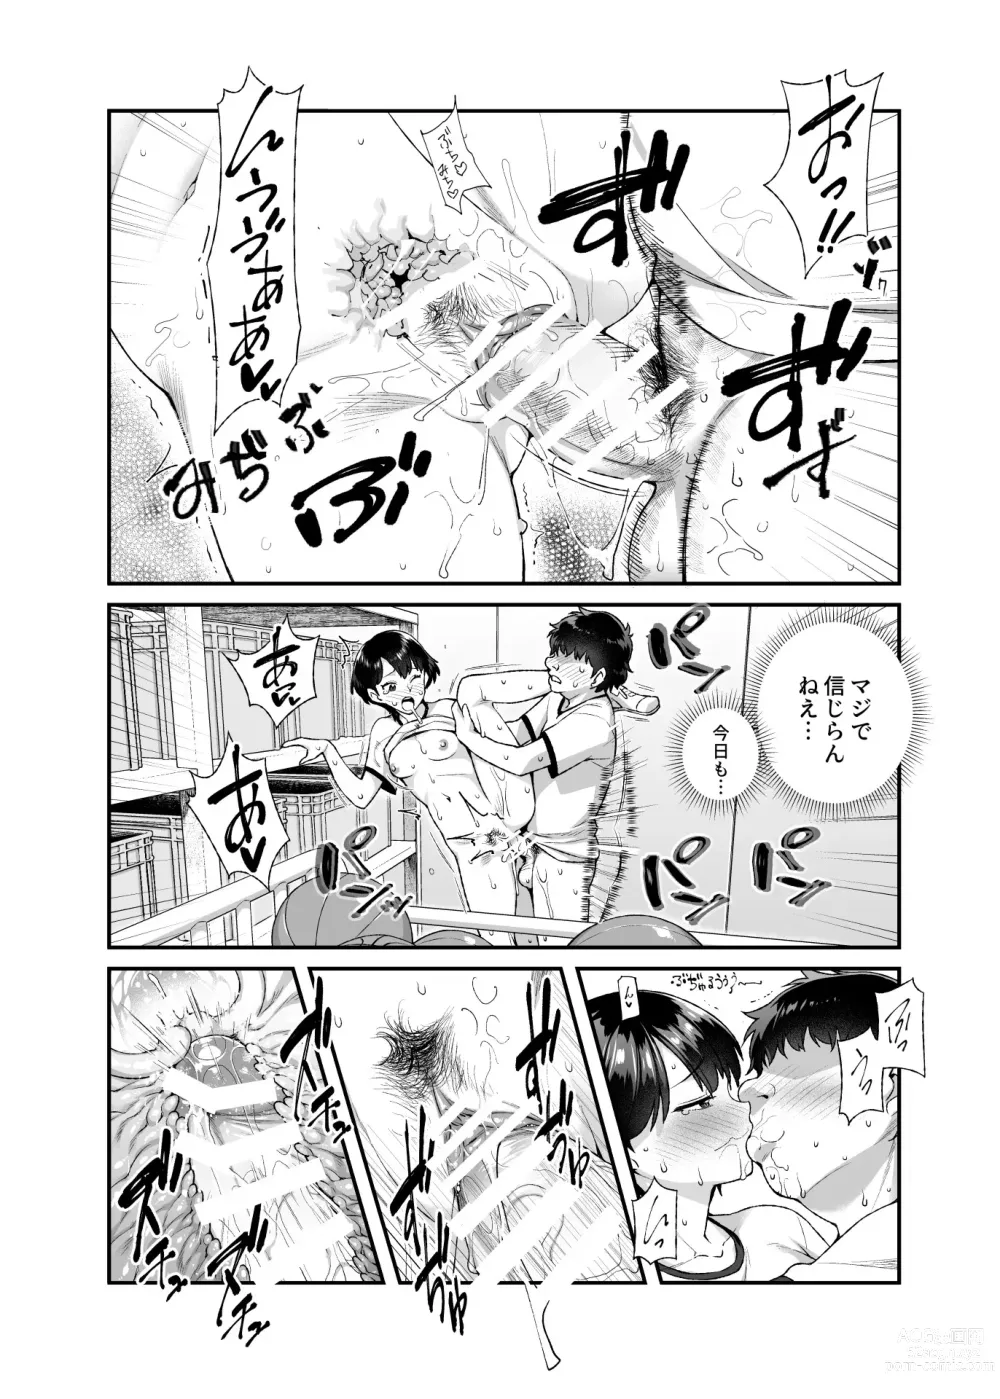 Page 23 of doujinshi Ore de Shojohaka Sureba Shiawase ninaruto Bazzutte EX